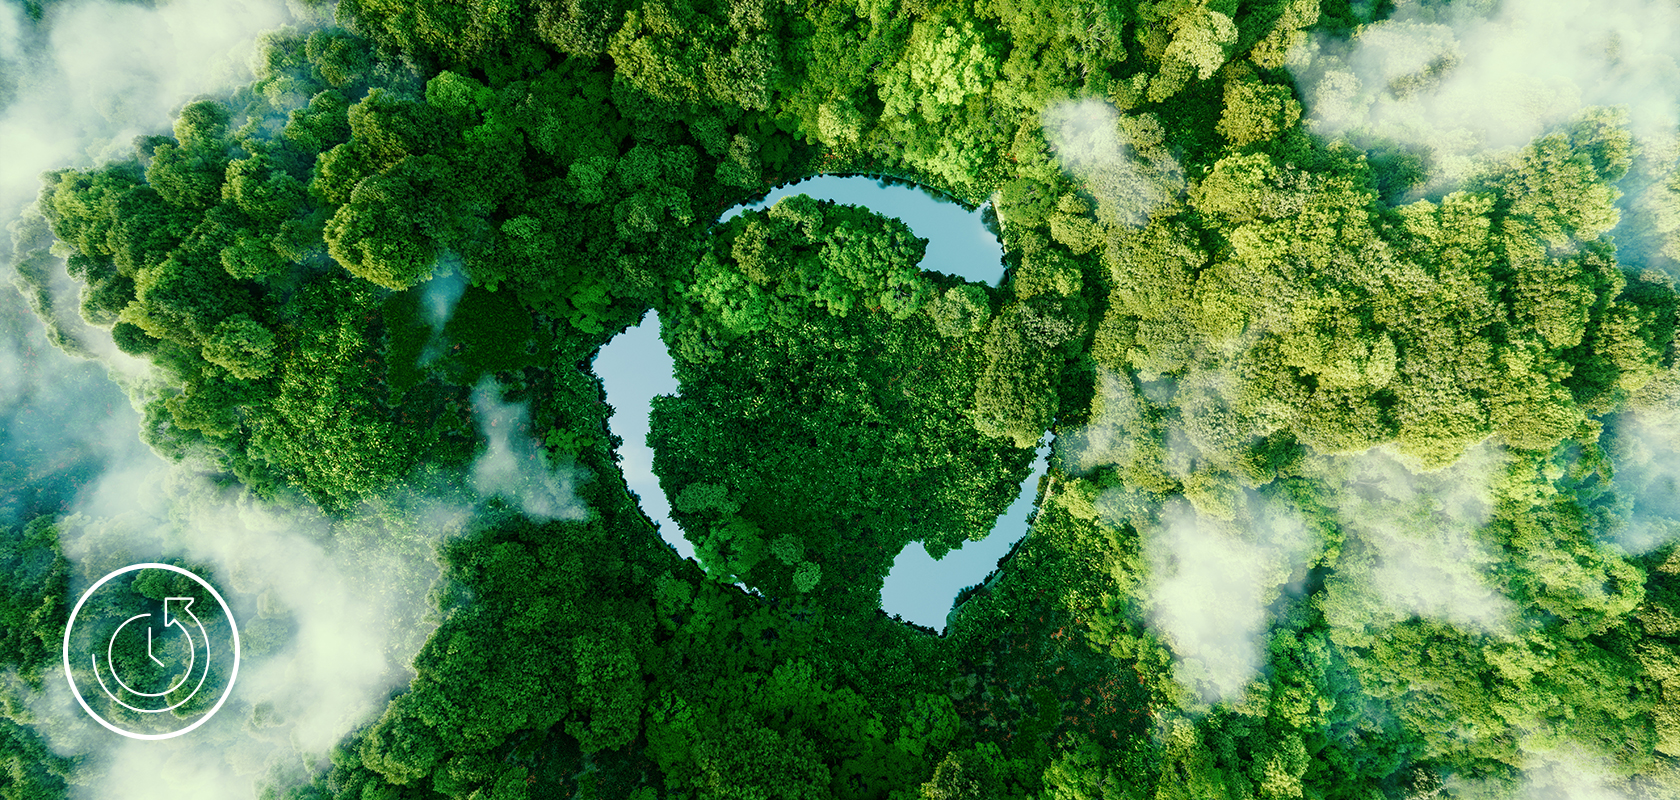 Une vue aérienne d'une forêt luxuriante avec une clairière circulaire frappante, symbolisant une initiative écologique ou le pouvoir de la nature.